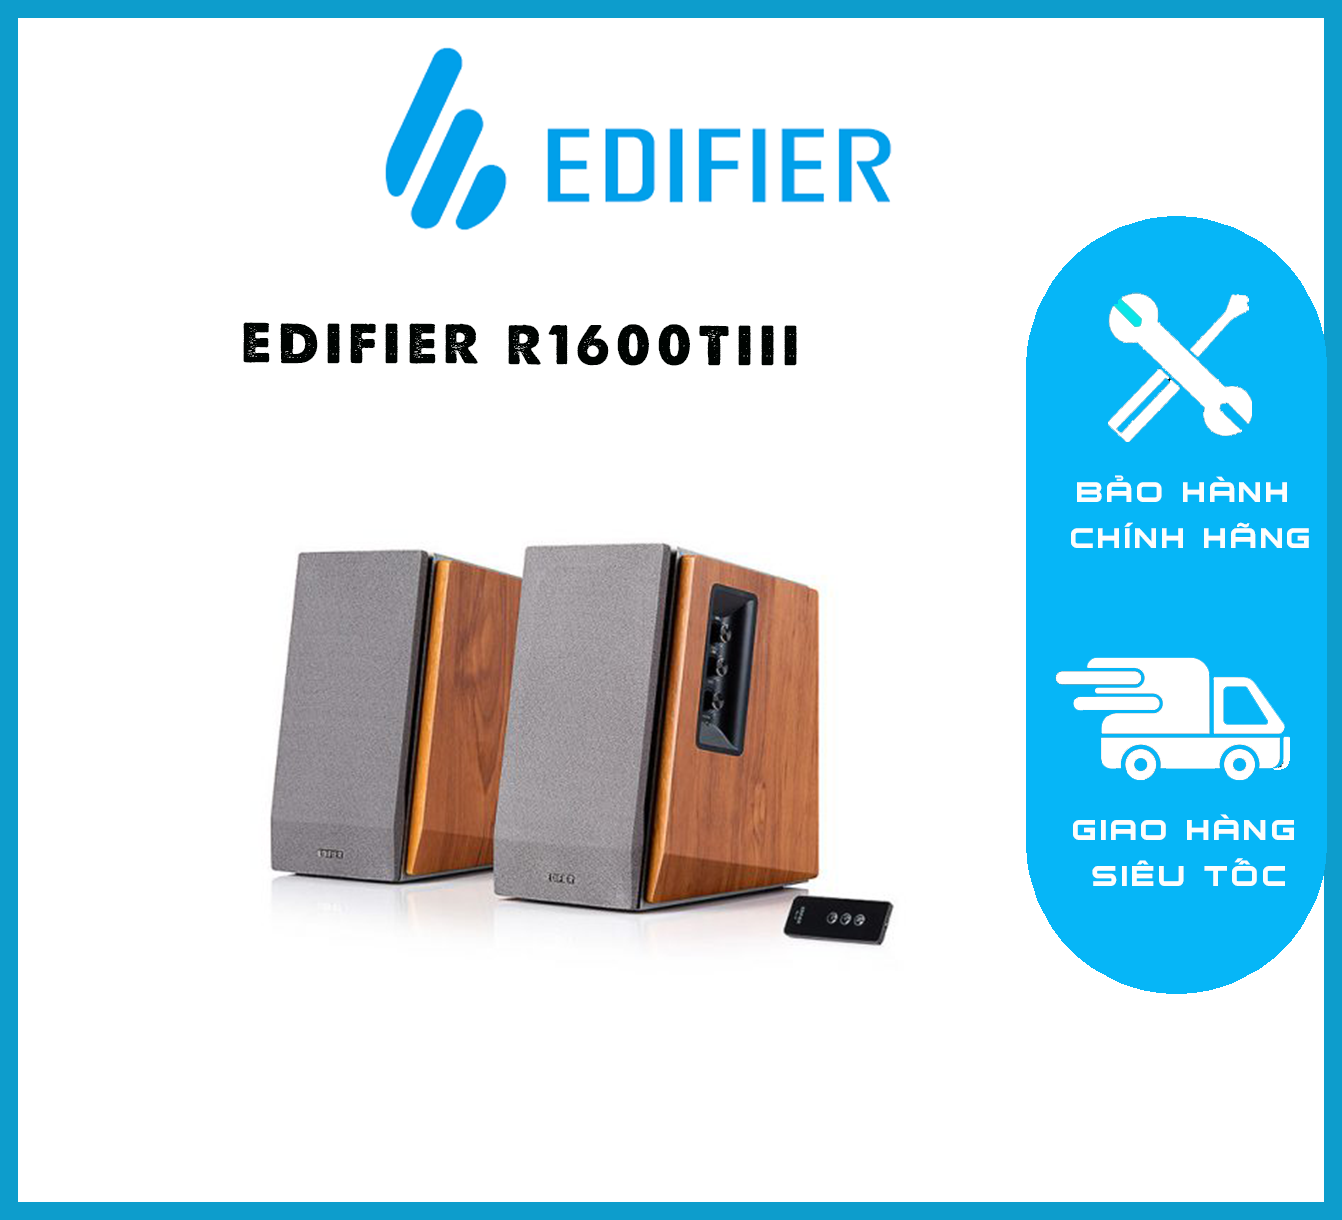 EDIFIER R1600TIII